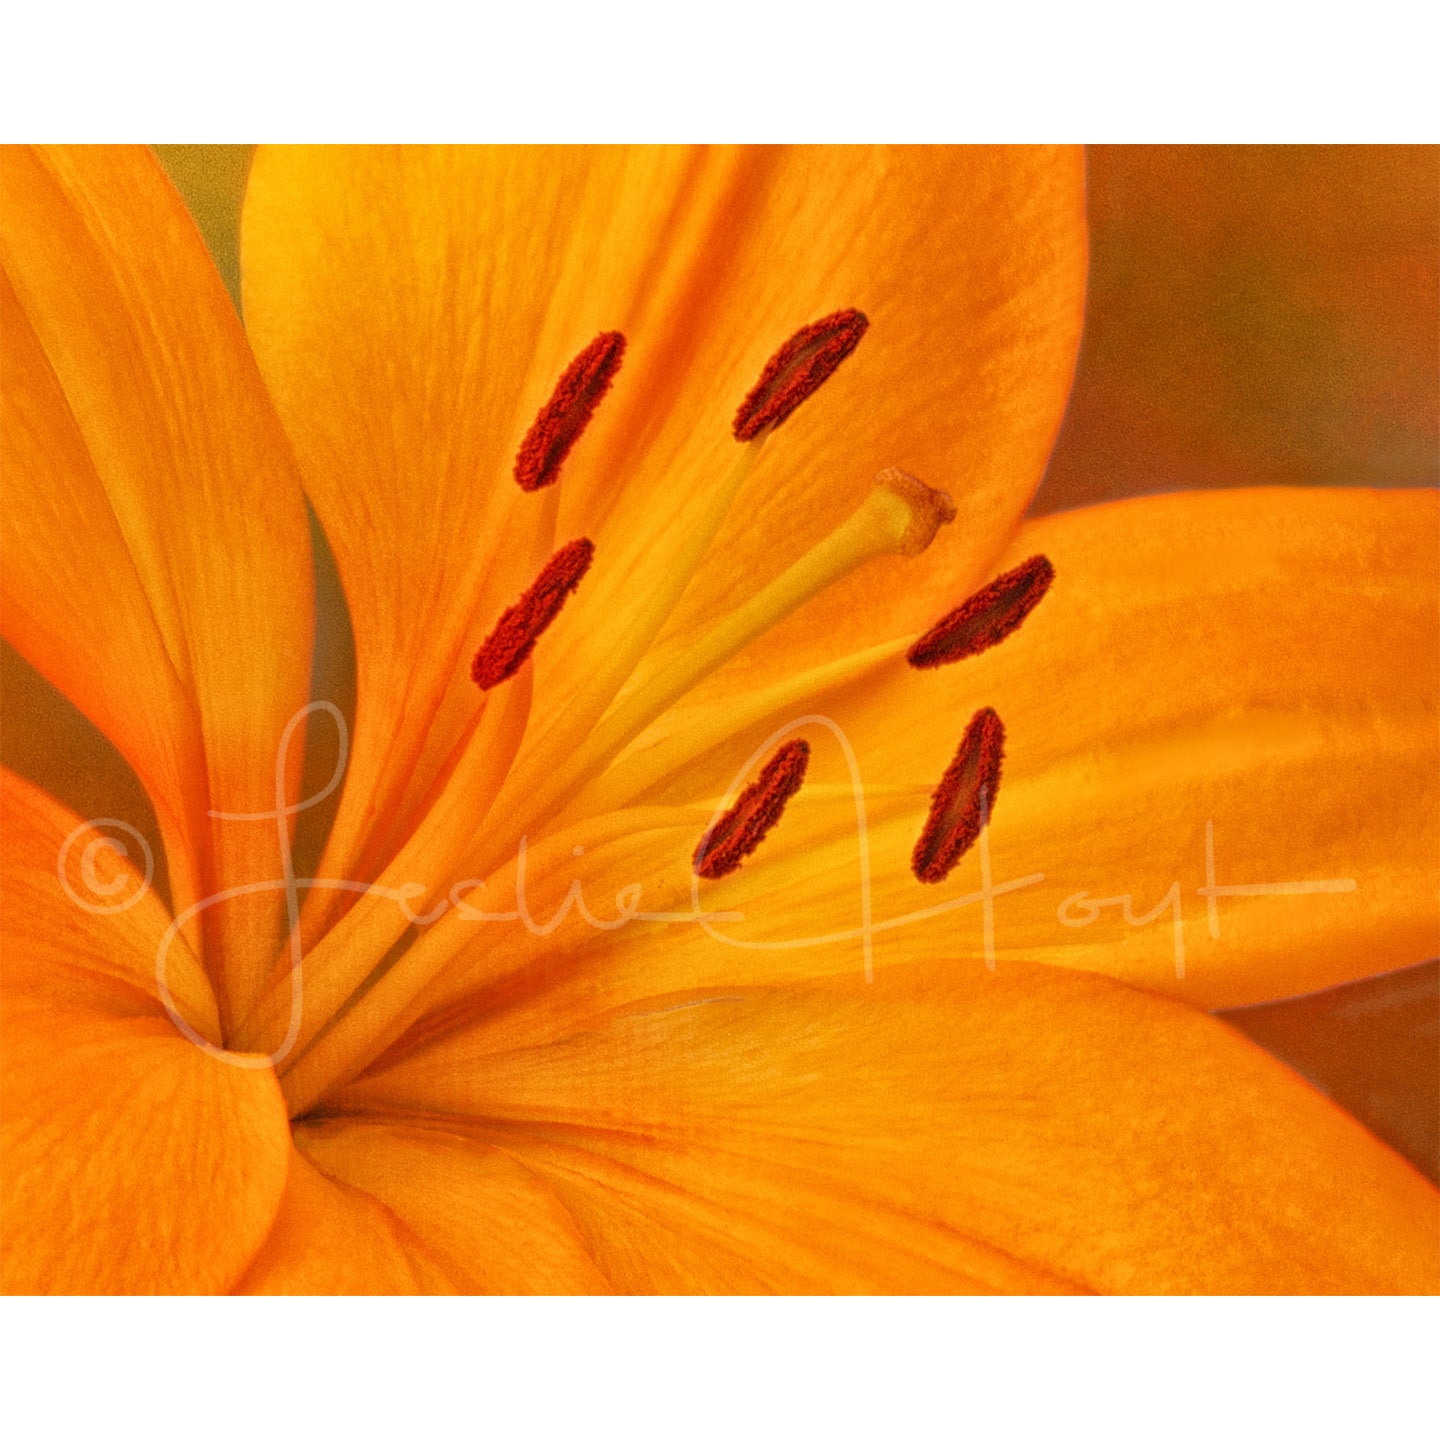 Lily in orange